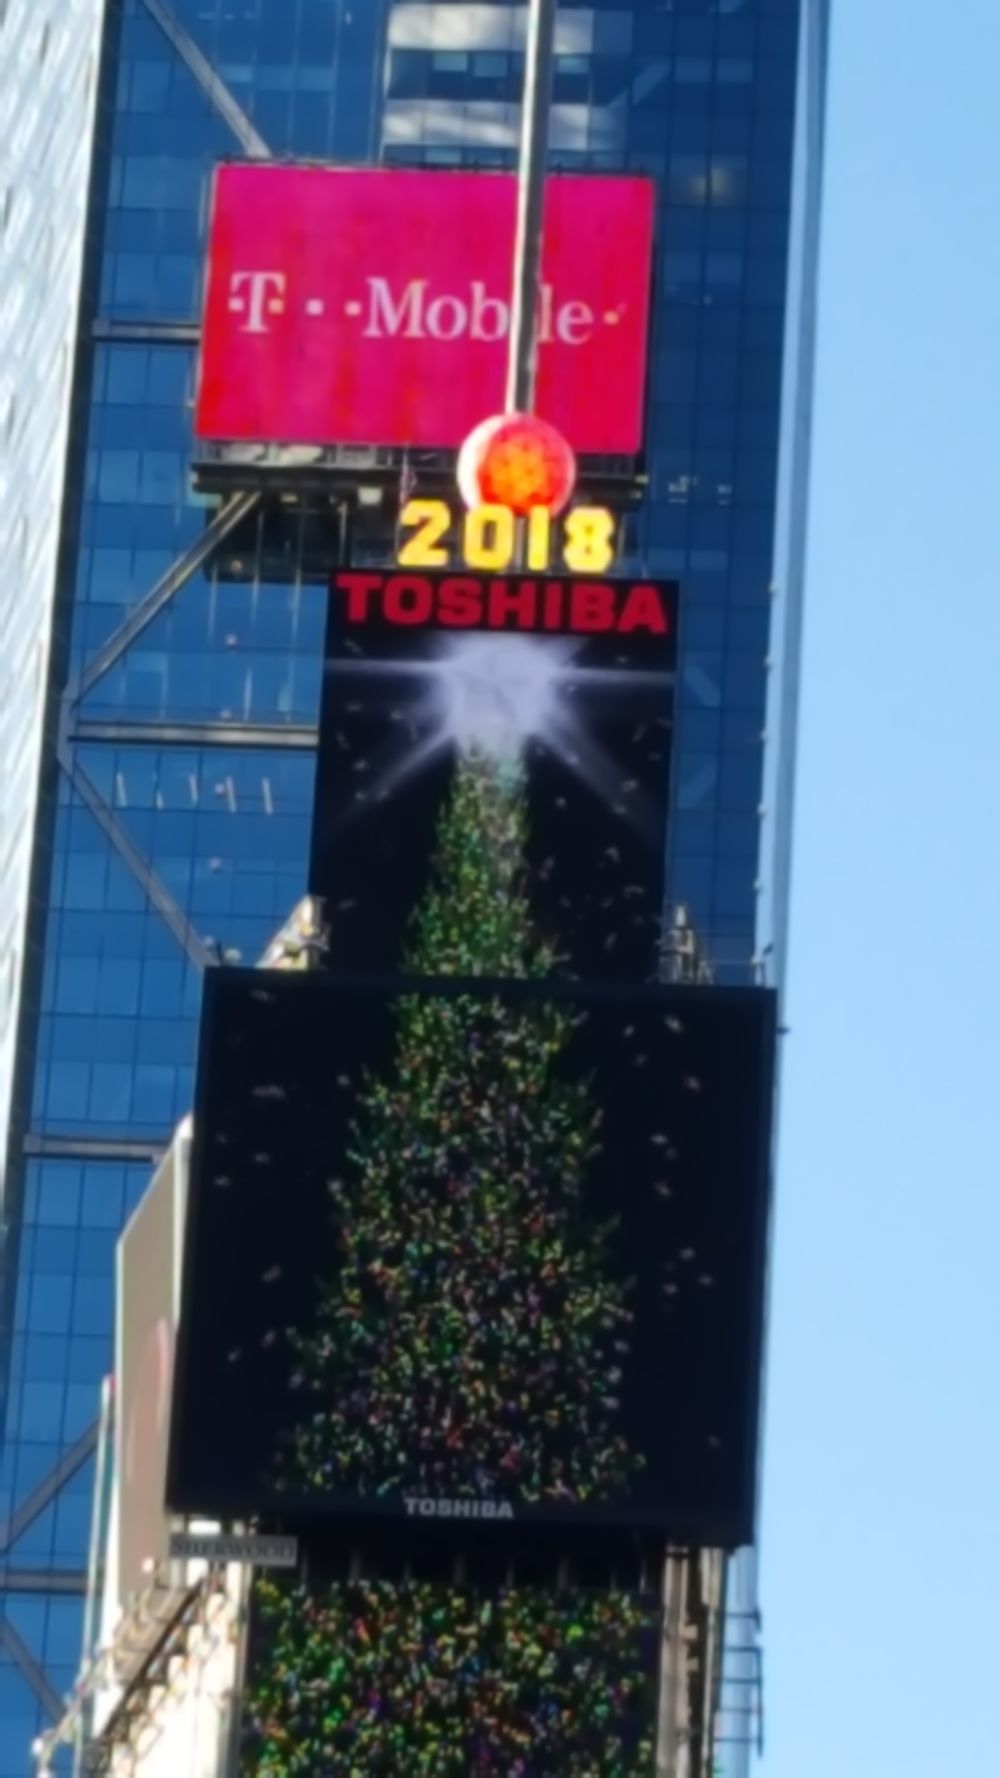 Re: Soirée nouvel an à Times Square (je cherche des idées) - taniania